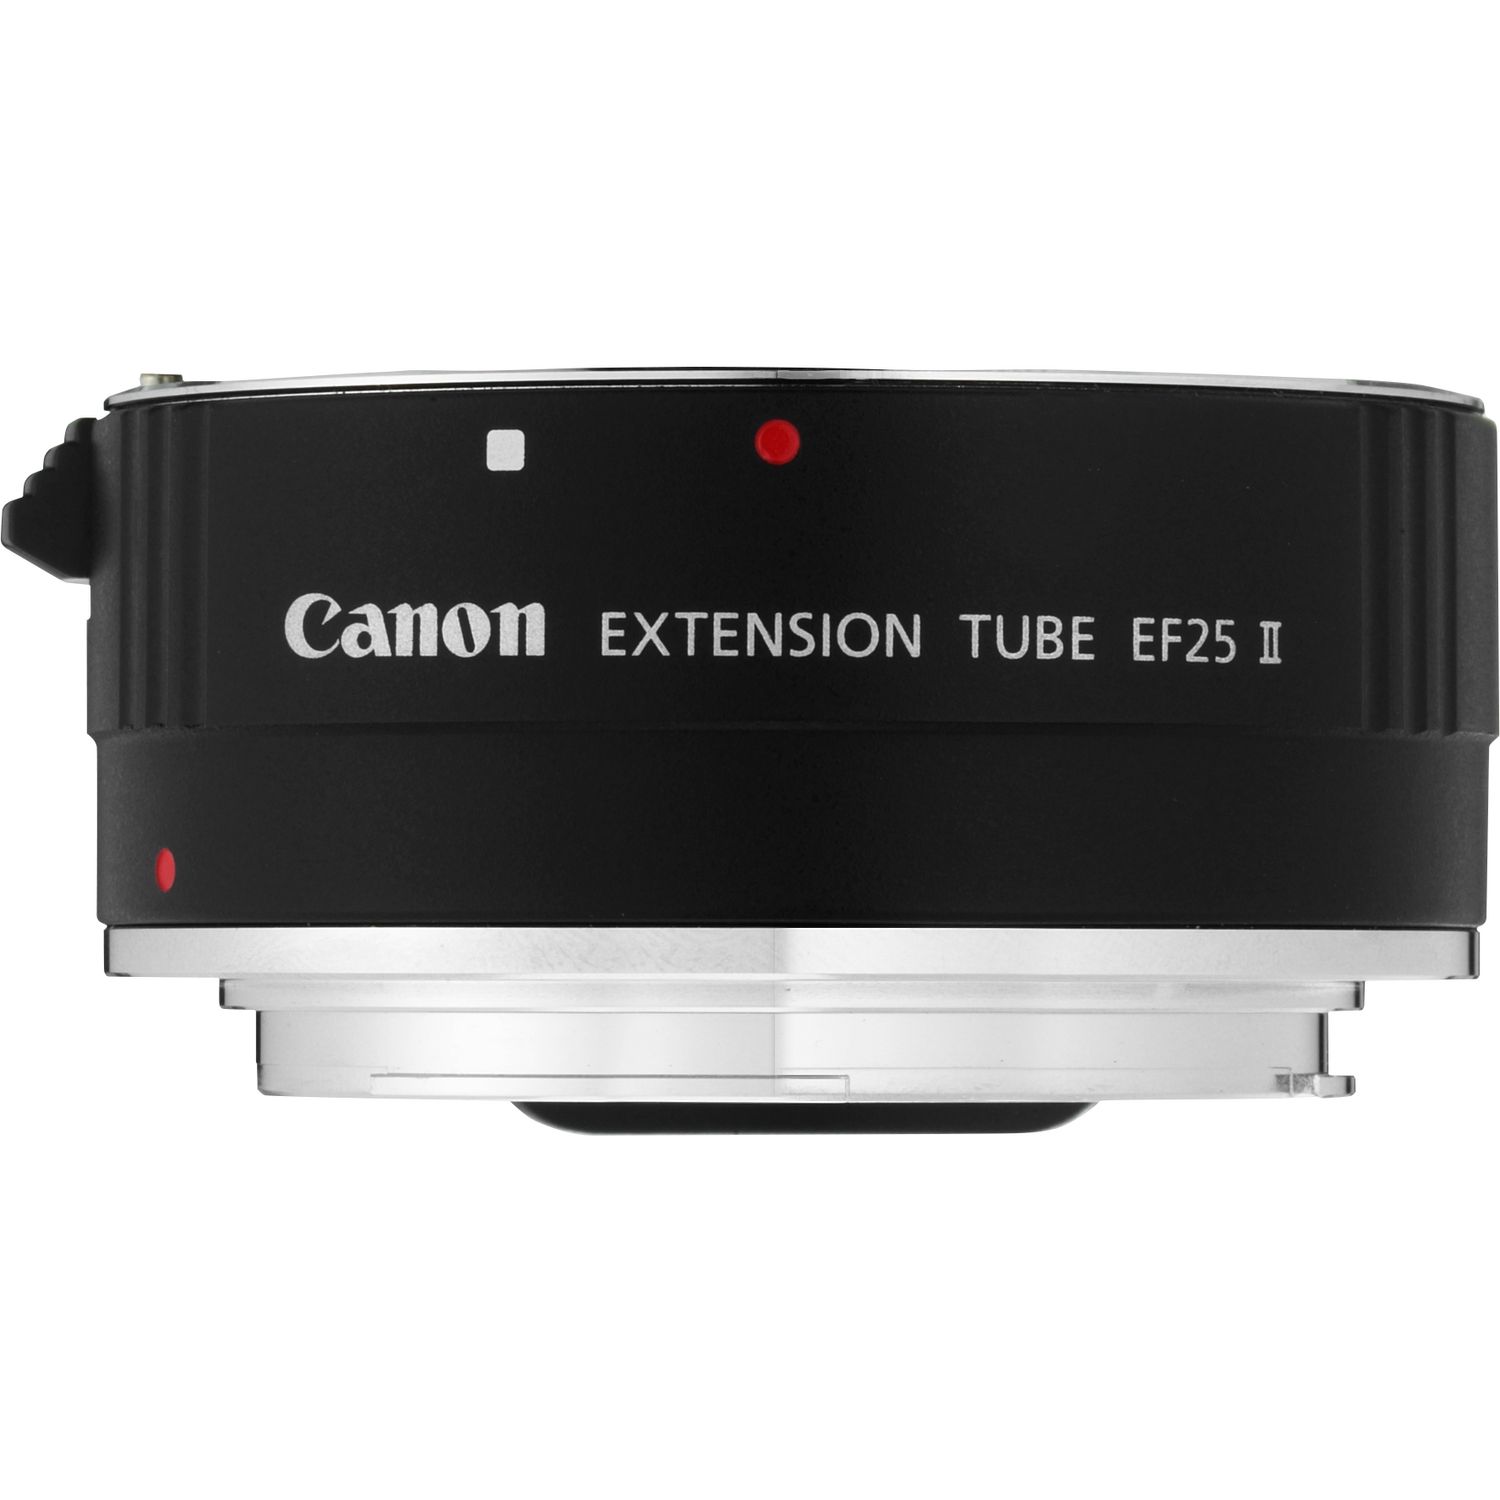 Compra de extensión Canon EF 25 II — Tienda Canon Espana